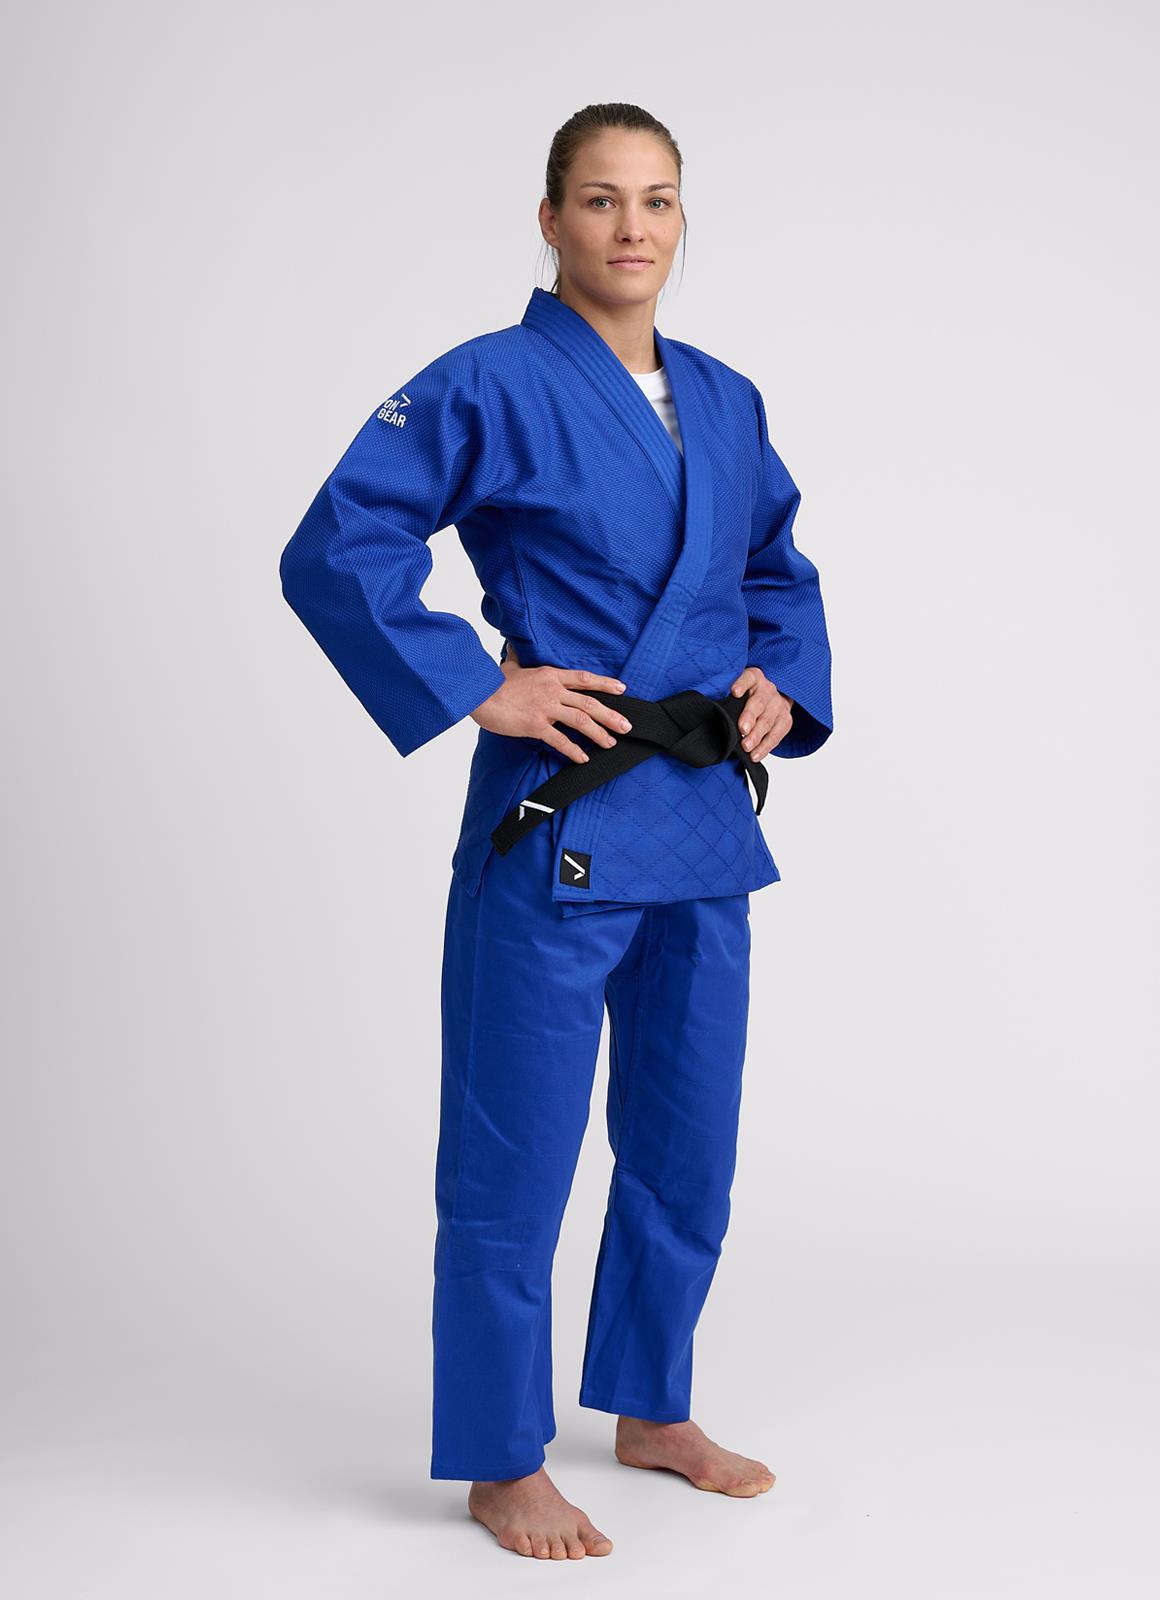 Ippon Gear 2 blauw volledig judopak - JI551 met broek